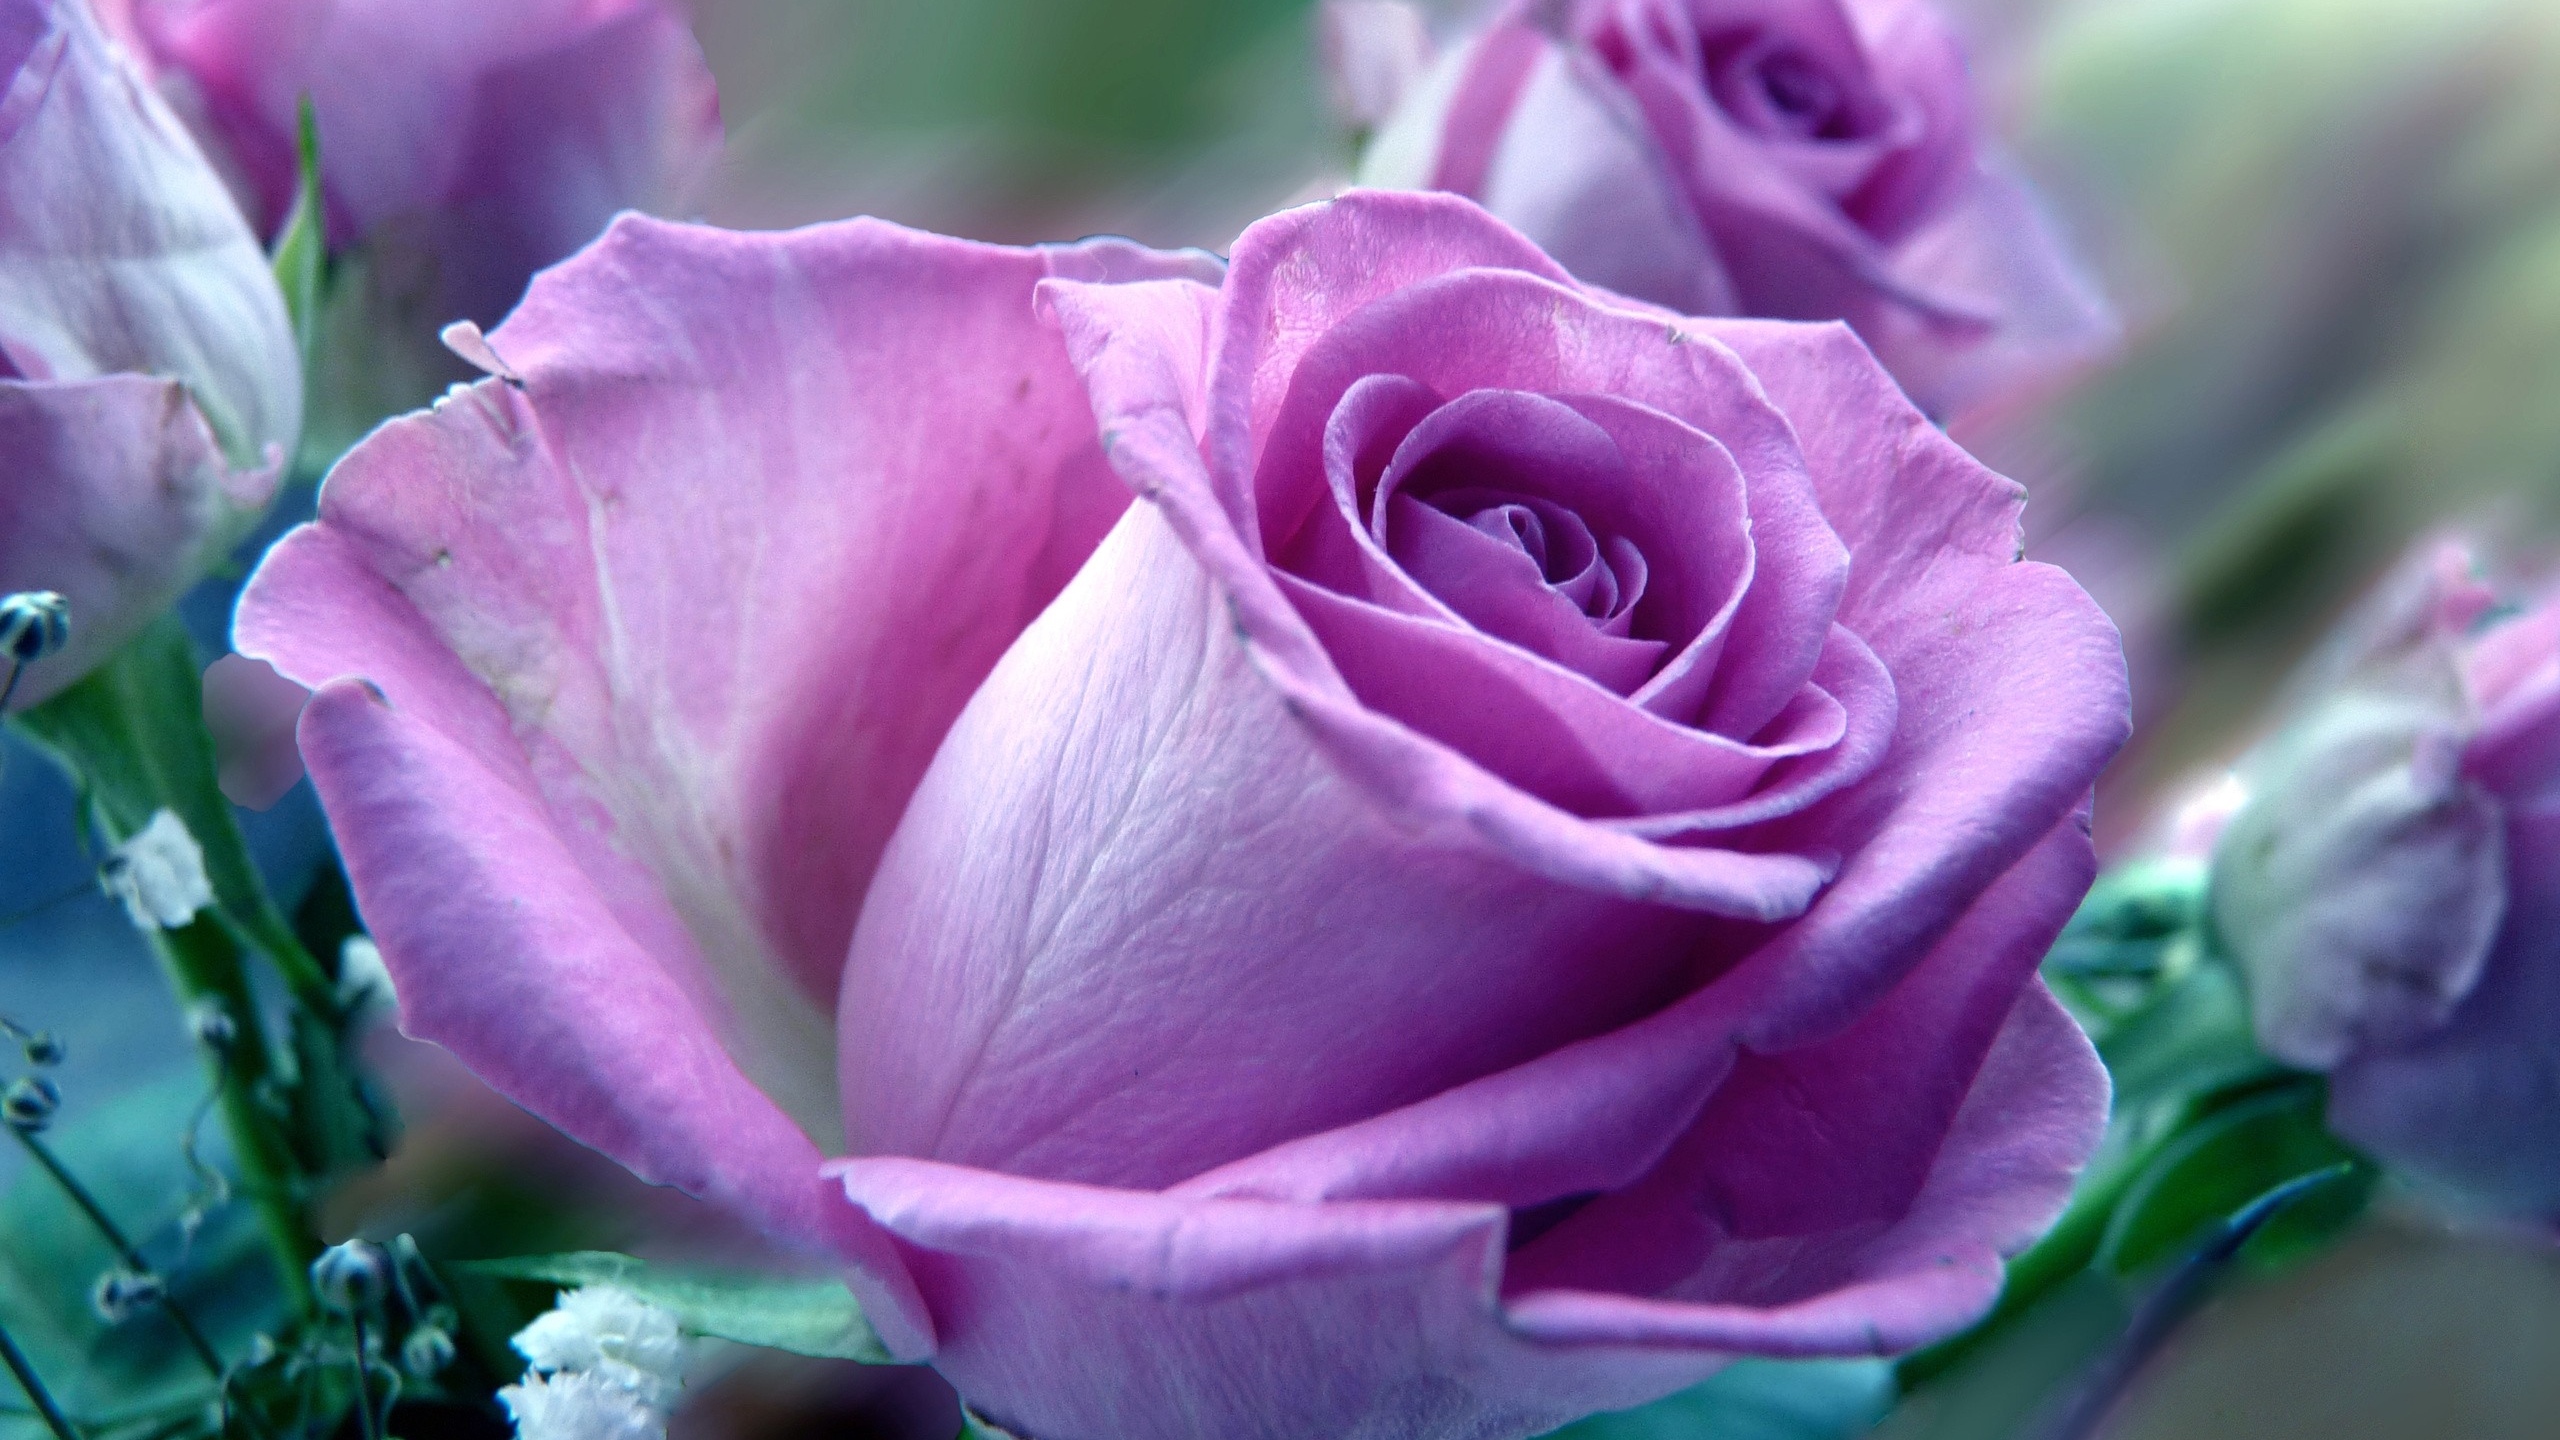 Wallpaper Flower, Rose, Nature - Beautiful Rose Full Screen - HD Wallpaper 